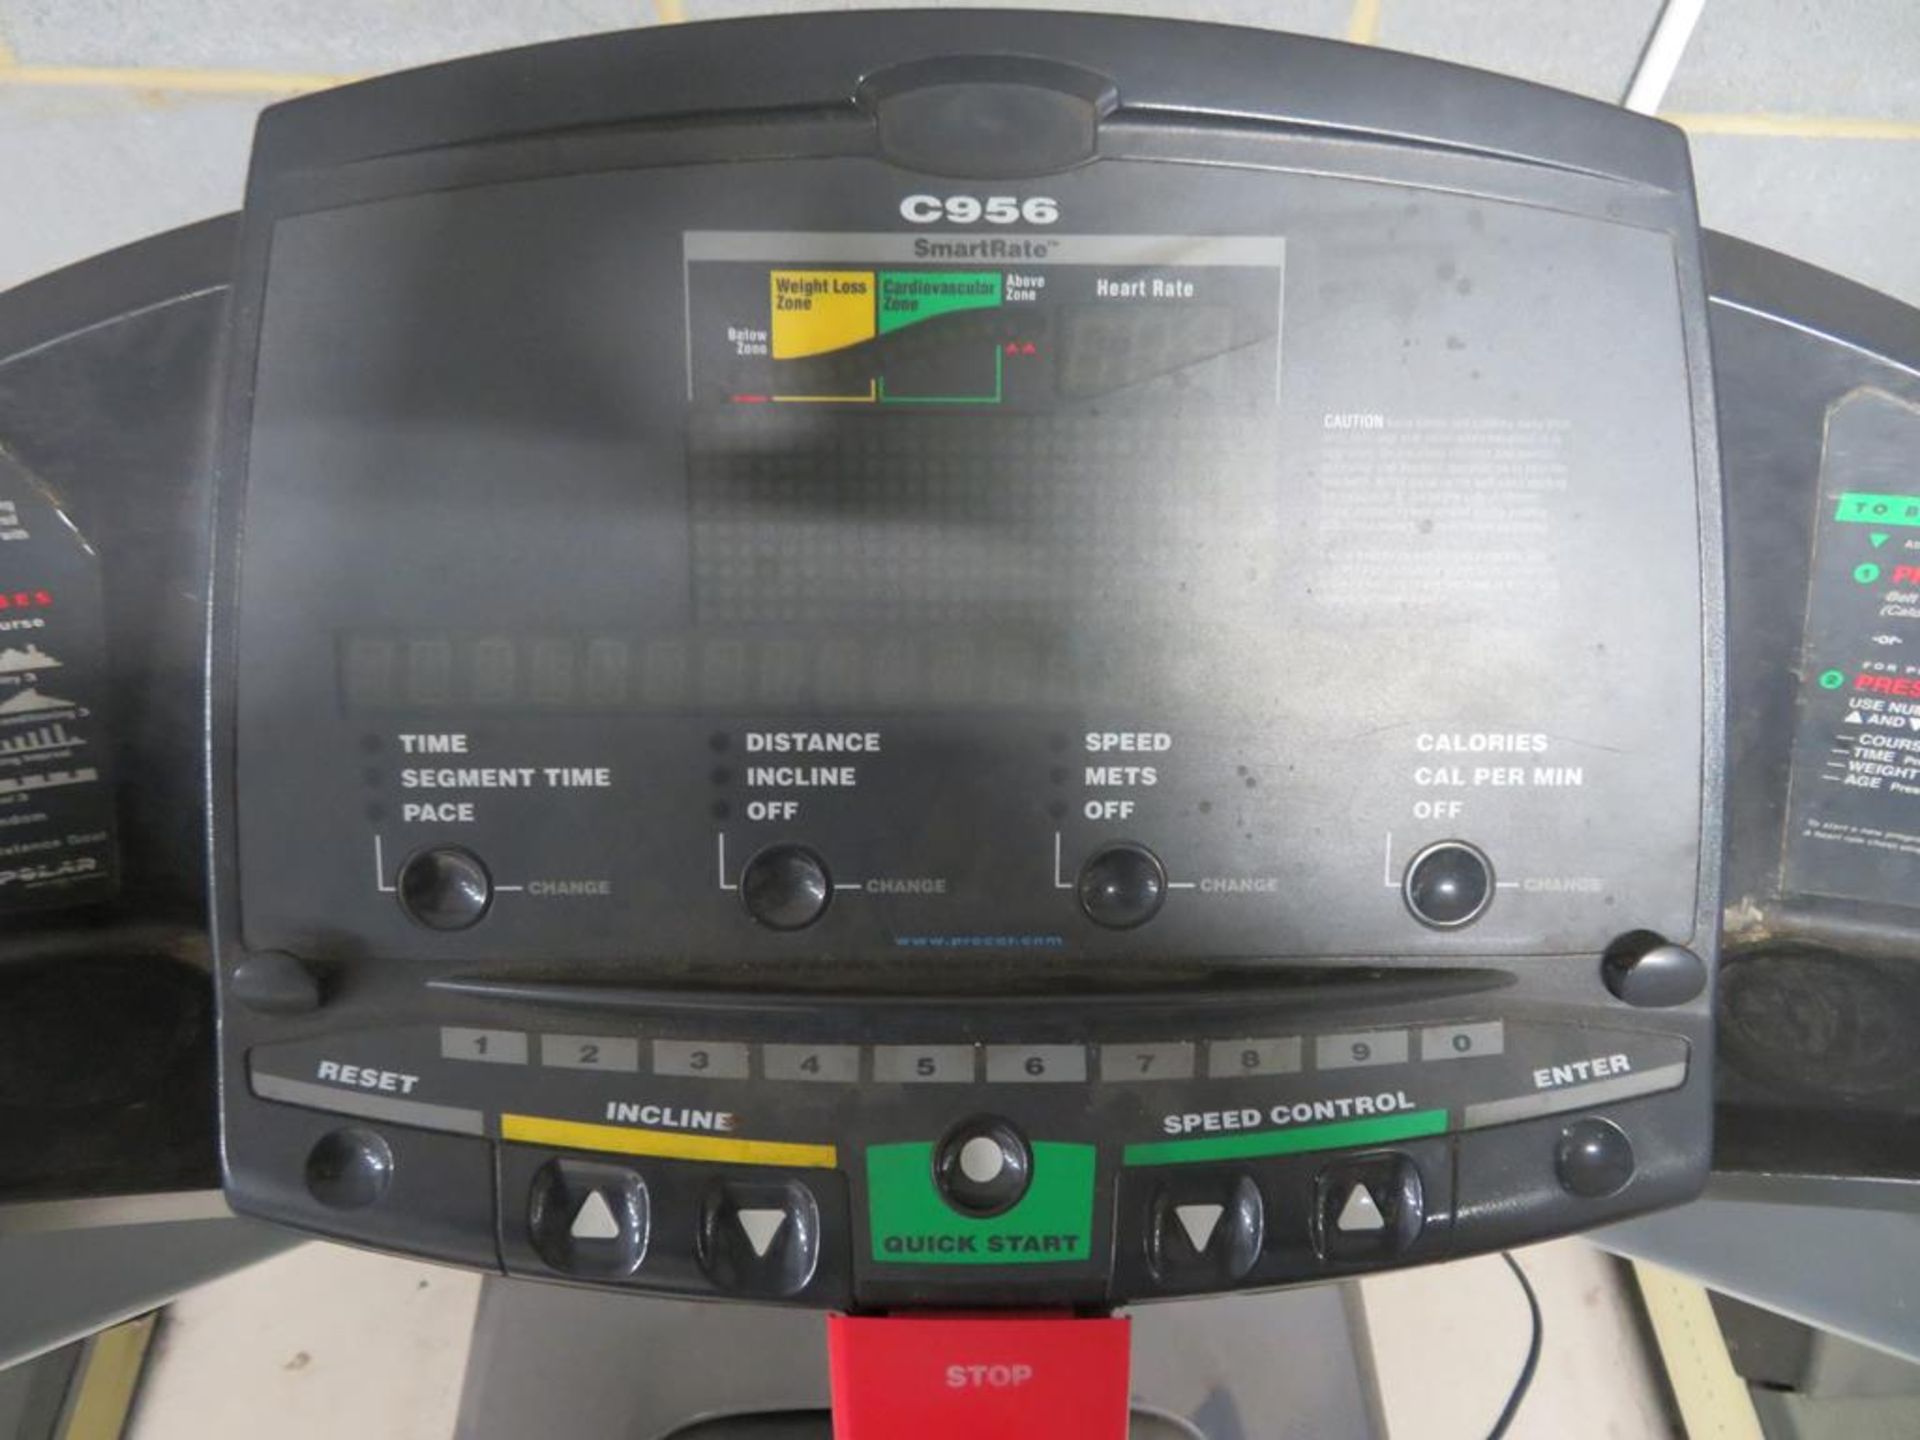 A Precore USA C956 Treadmill - Image 5 of 6